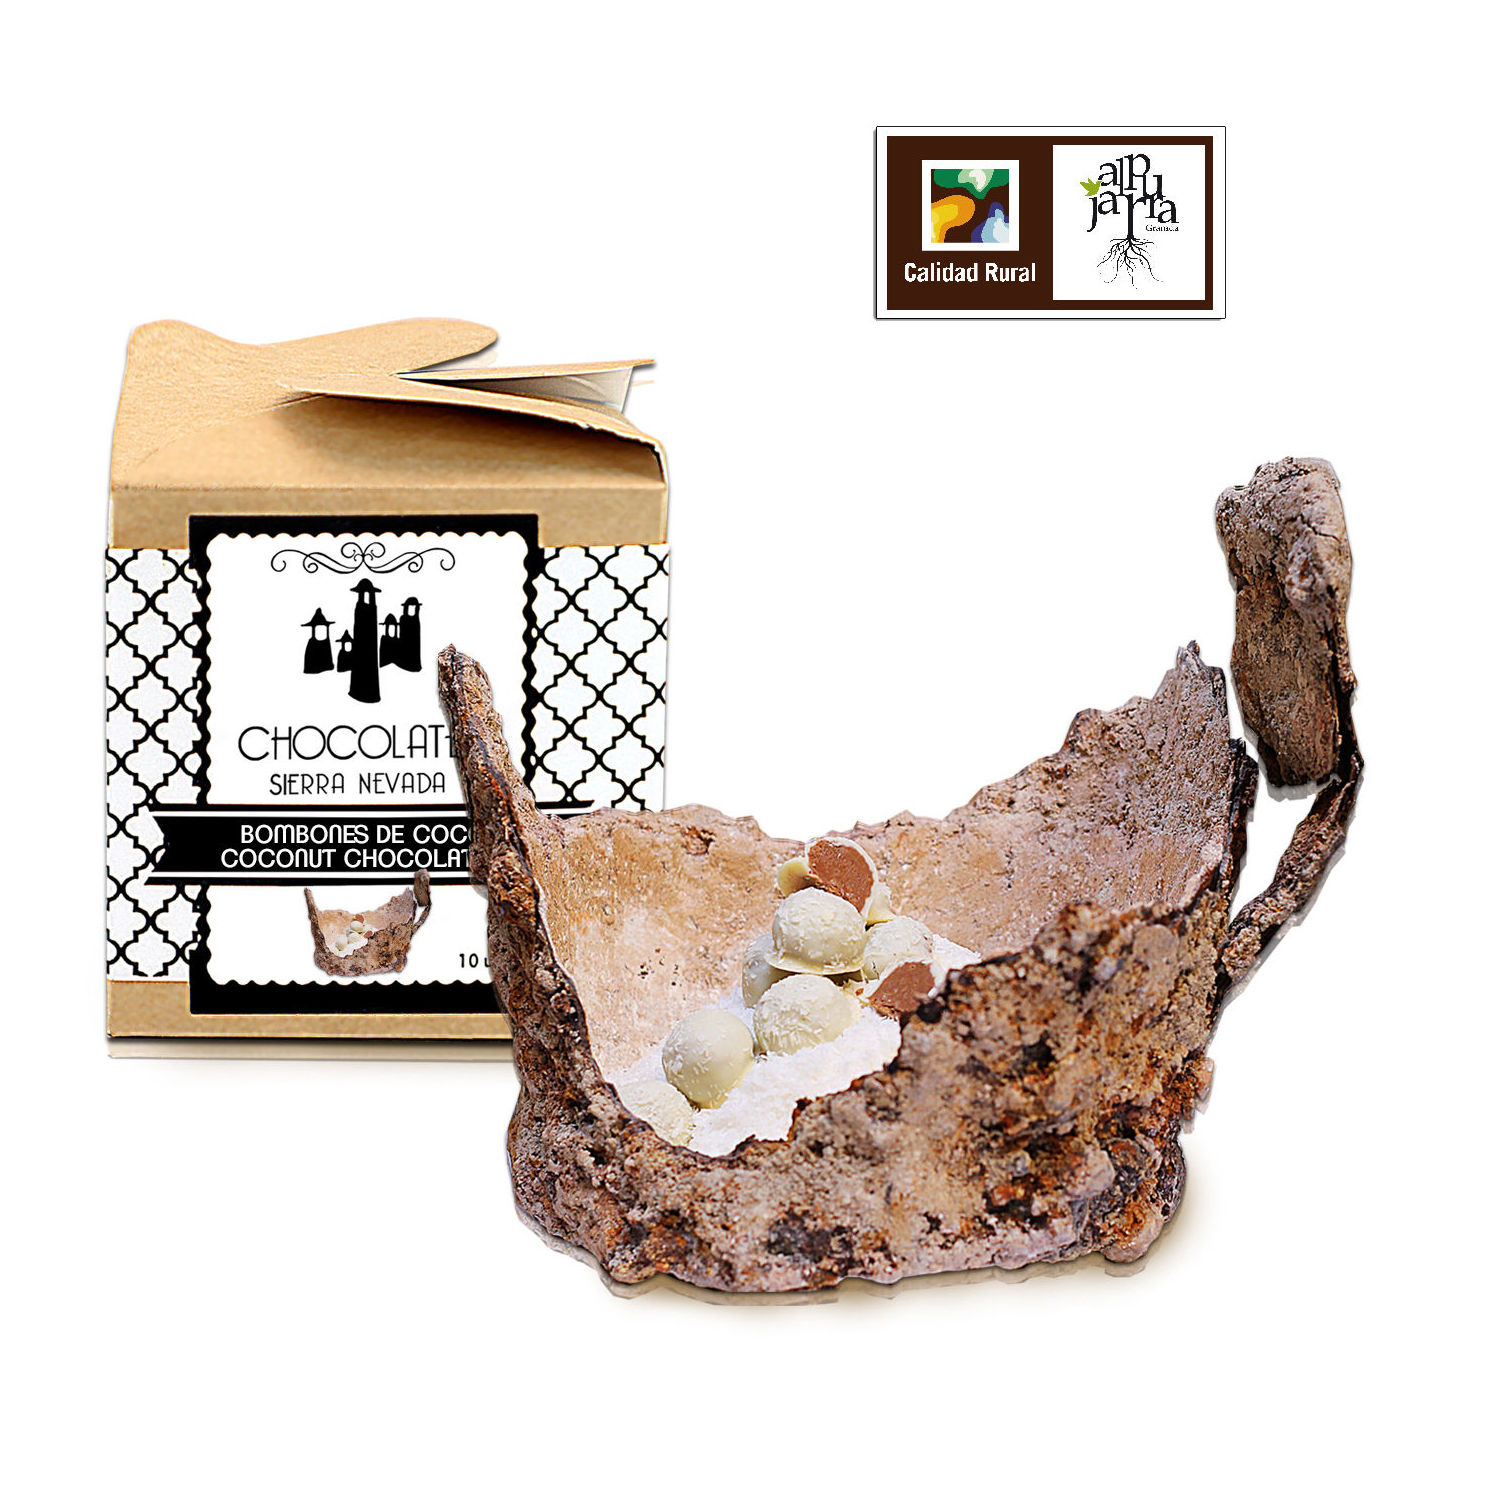 Bombones de coco: Nuestros productos de Chocolates Sierra Nevada